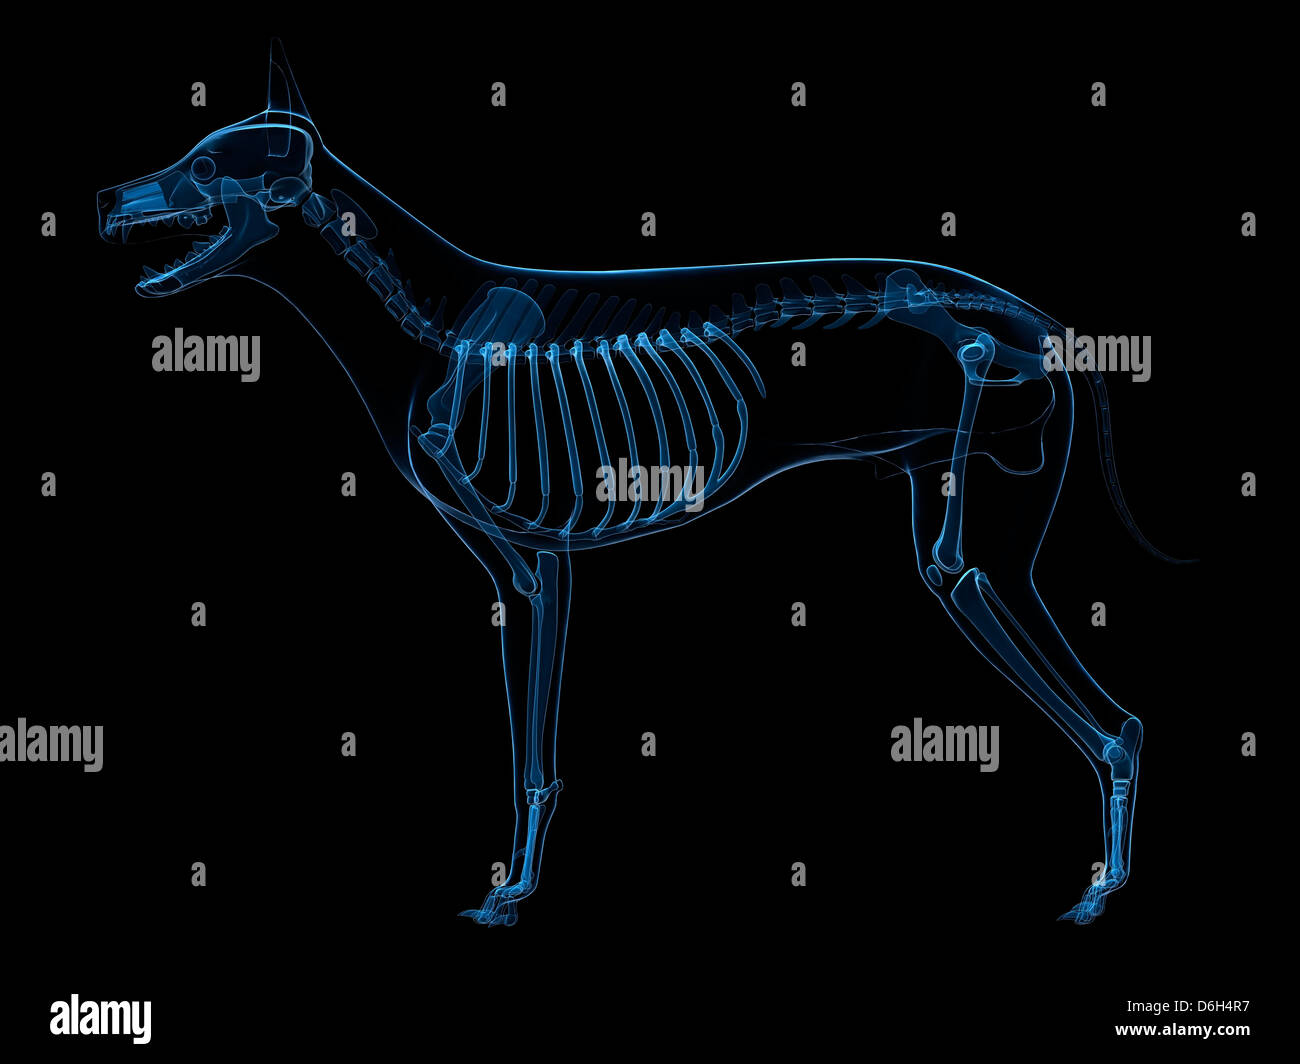 Hund knochengerüst -Fotos -Bildmaterial in hoher Auflösung – Alamy